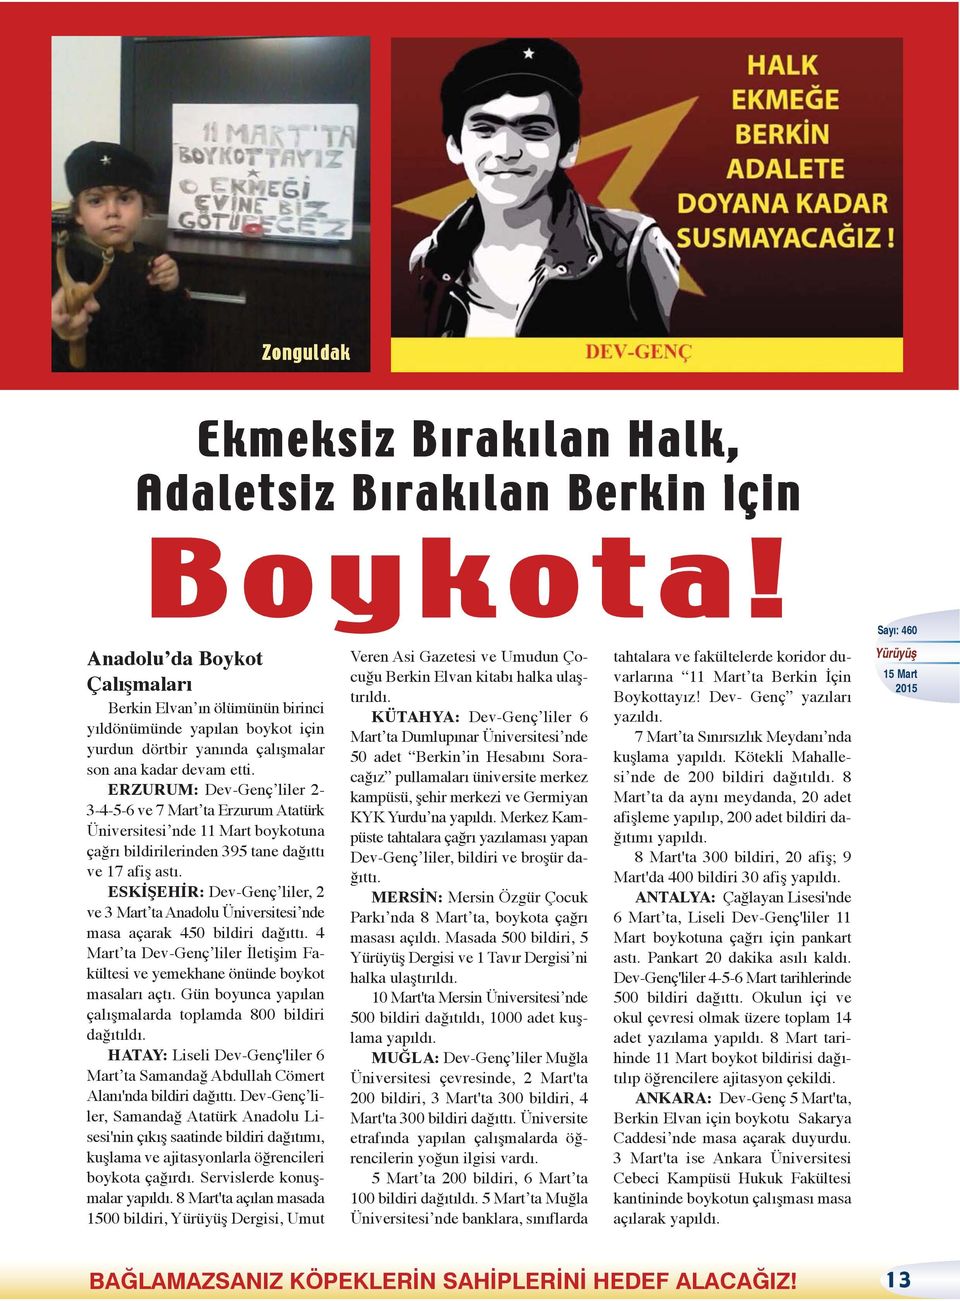 ERZURUM: Dev-Genç liler 2-3-4-5-6 ve 7 Mart ta Erzurum Atatürk Üniversitesi nde 11 Mart boykotuna çağrı bildirilerinden 395 tane dağıttı ve 17 afiş astı.